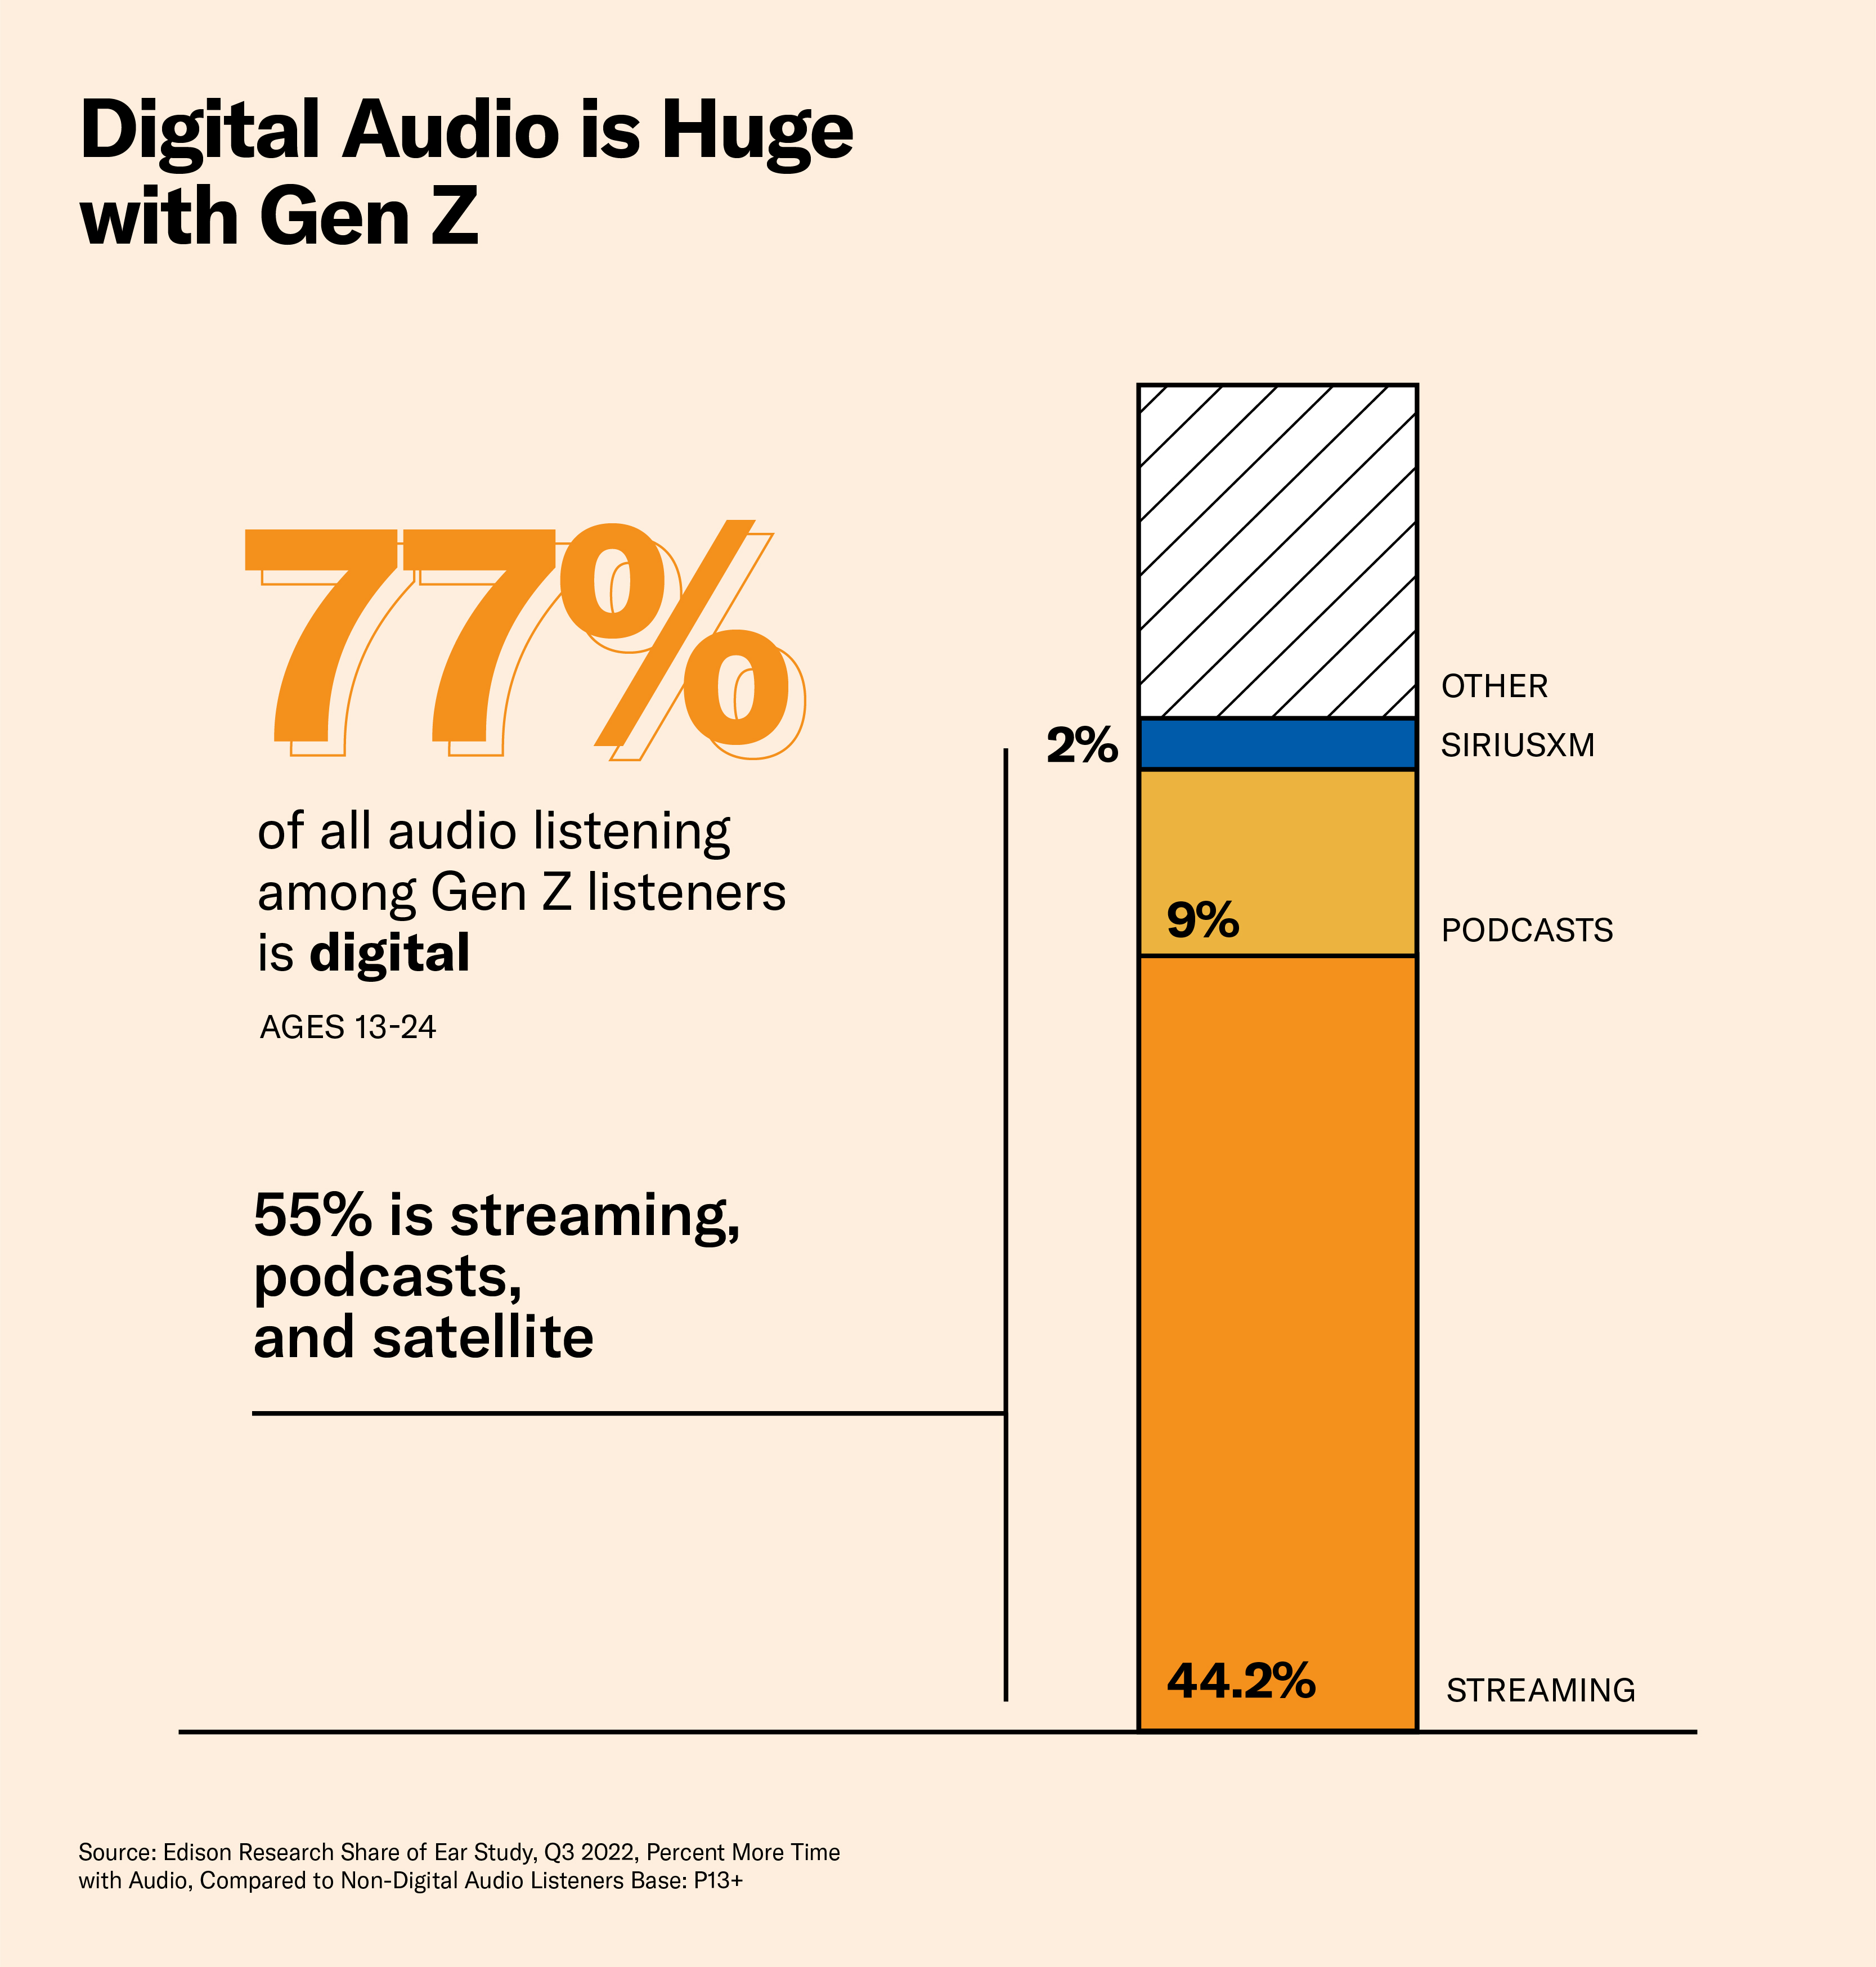 digital audio is huge with Gen Z